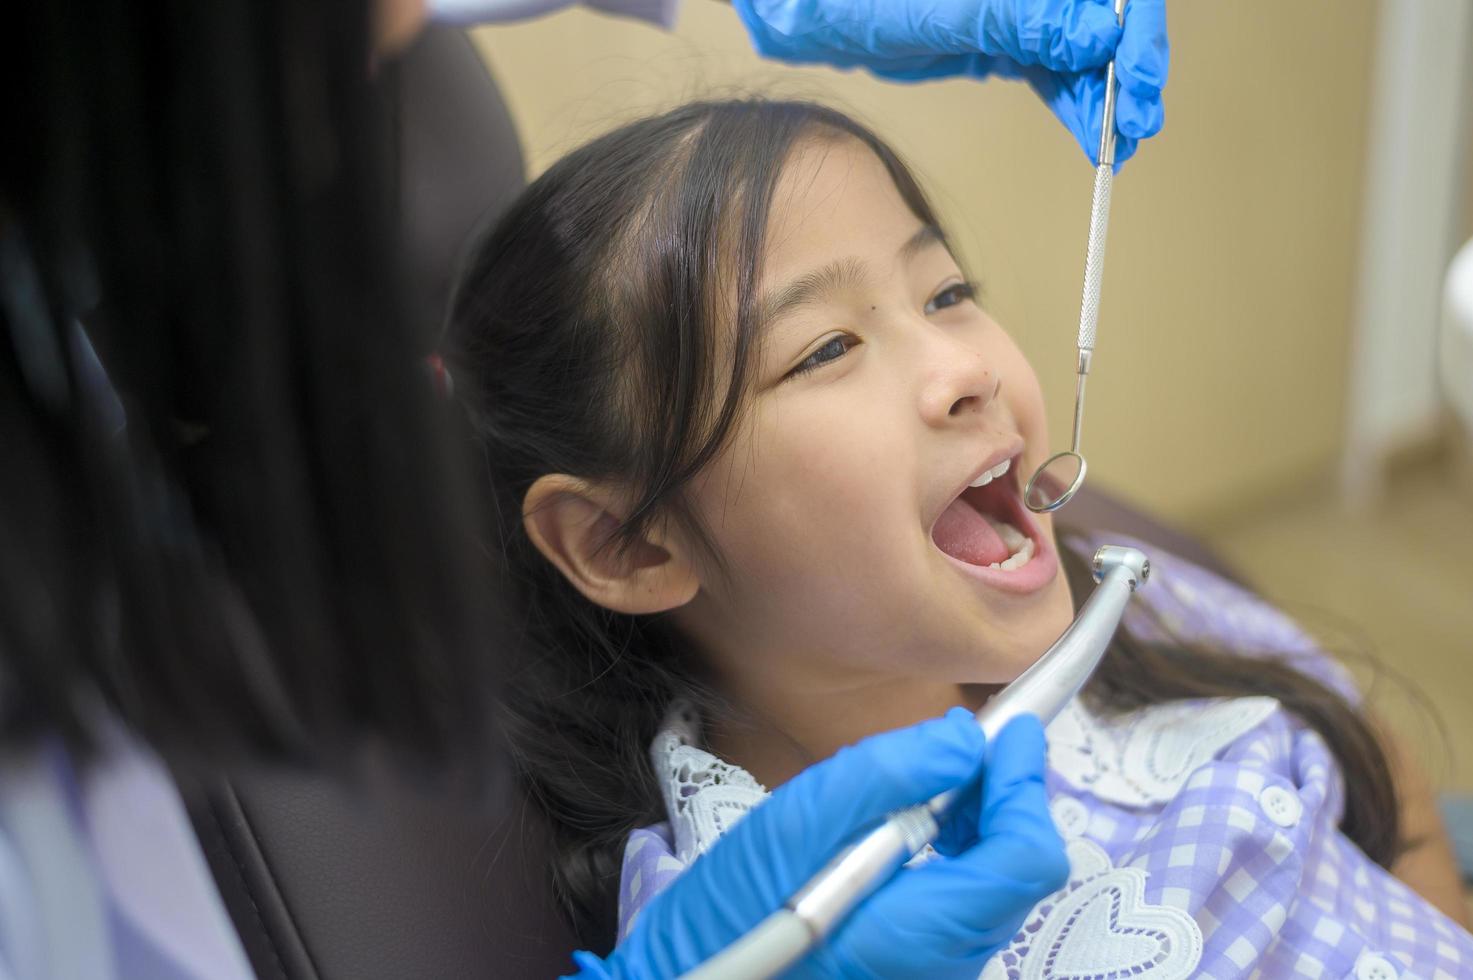 una piccola ragazza carina che ha i denti esaminati dal dentista in clinica dentale, controllo dei denti e concetto di denti sani foto